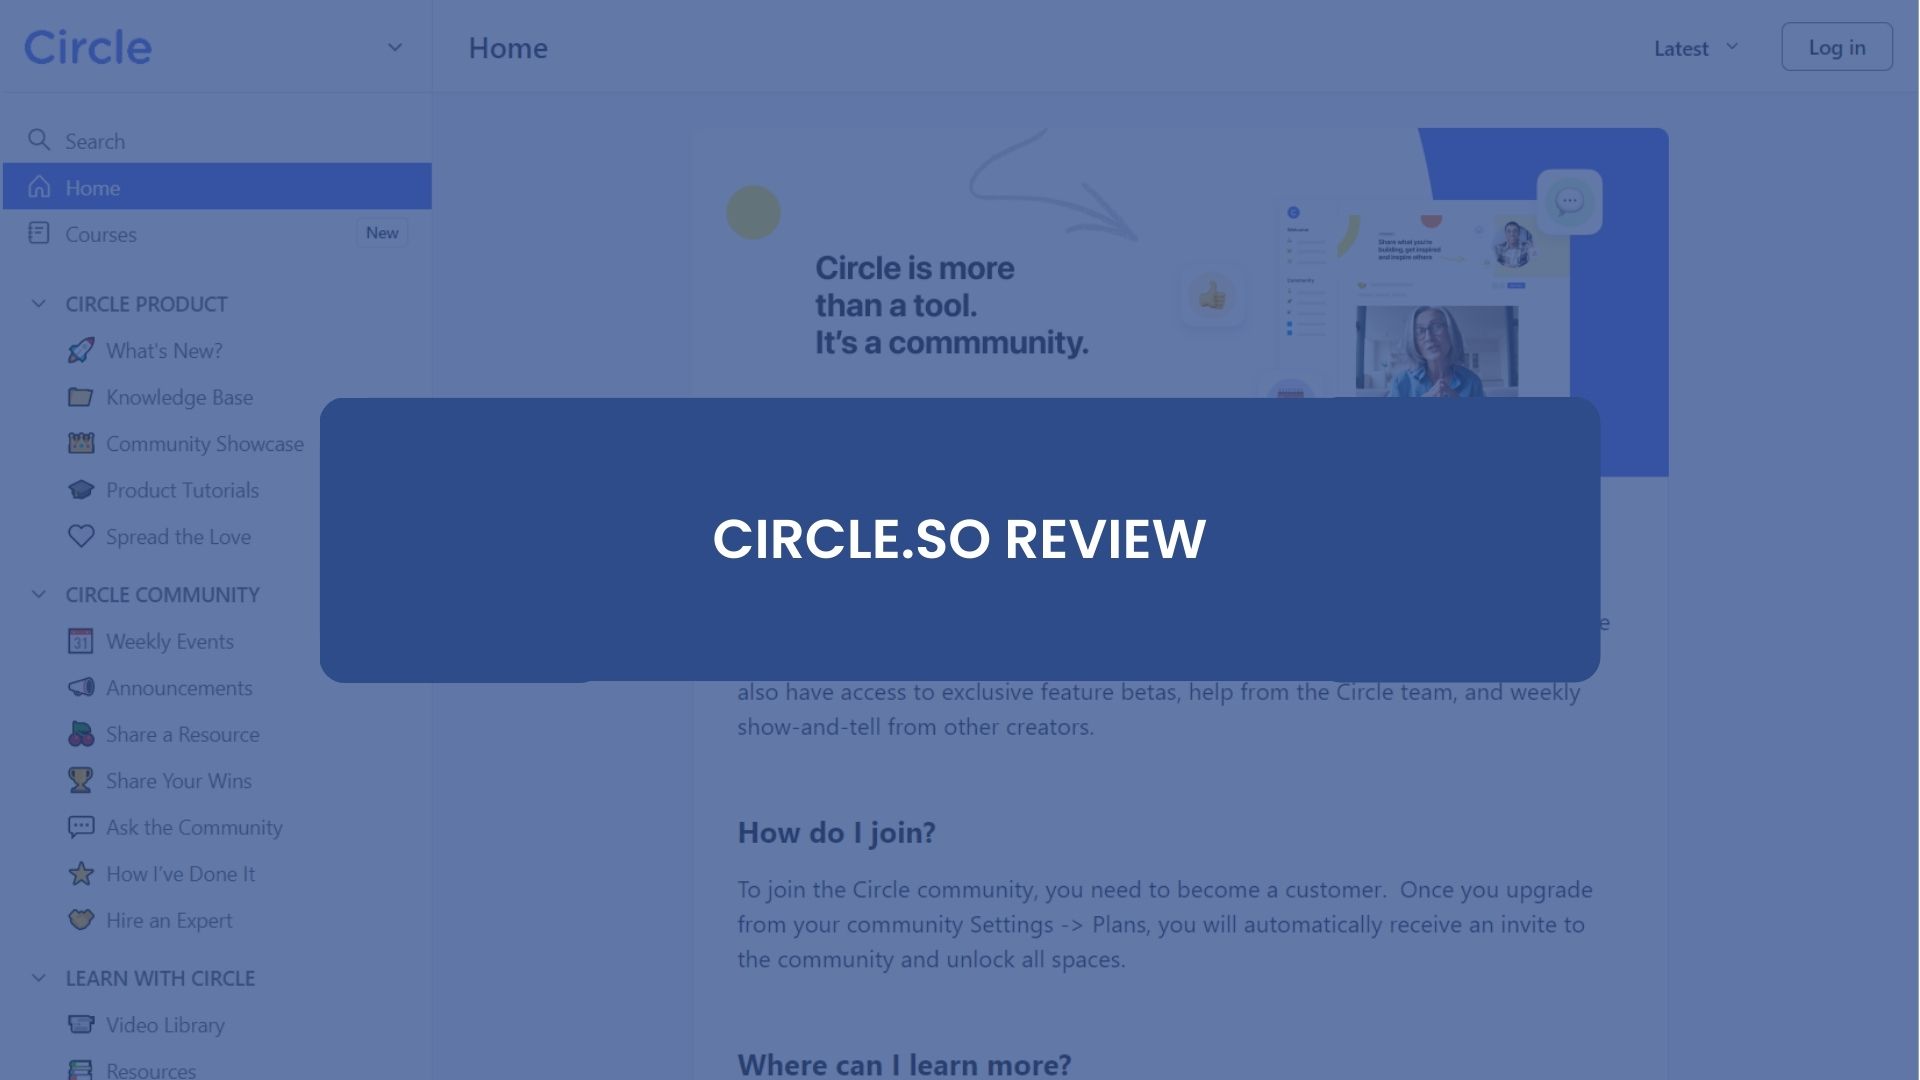 Circle.so Review